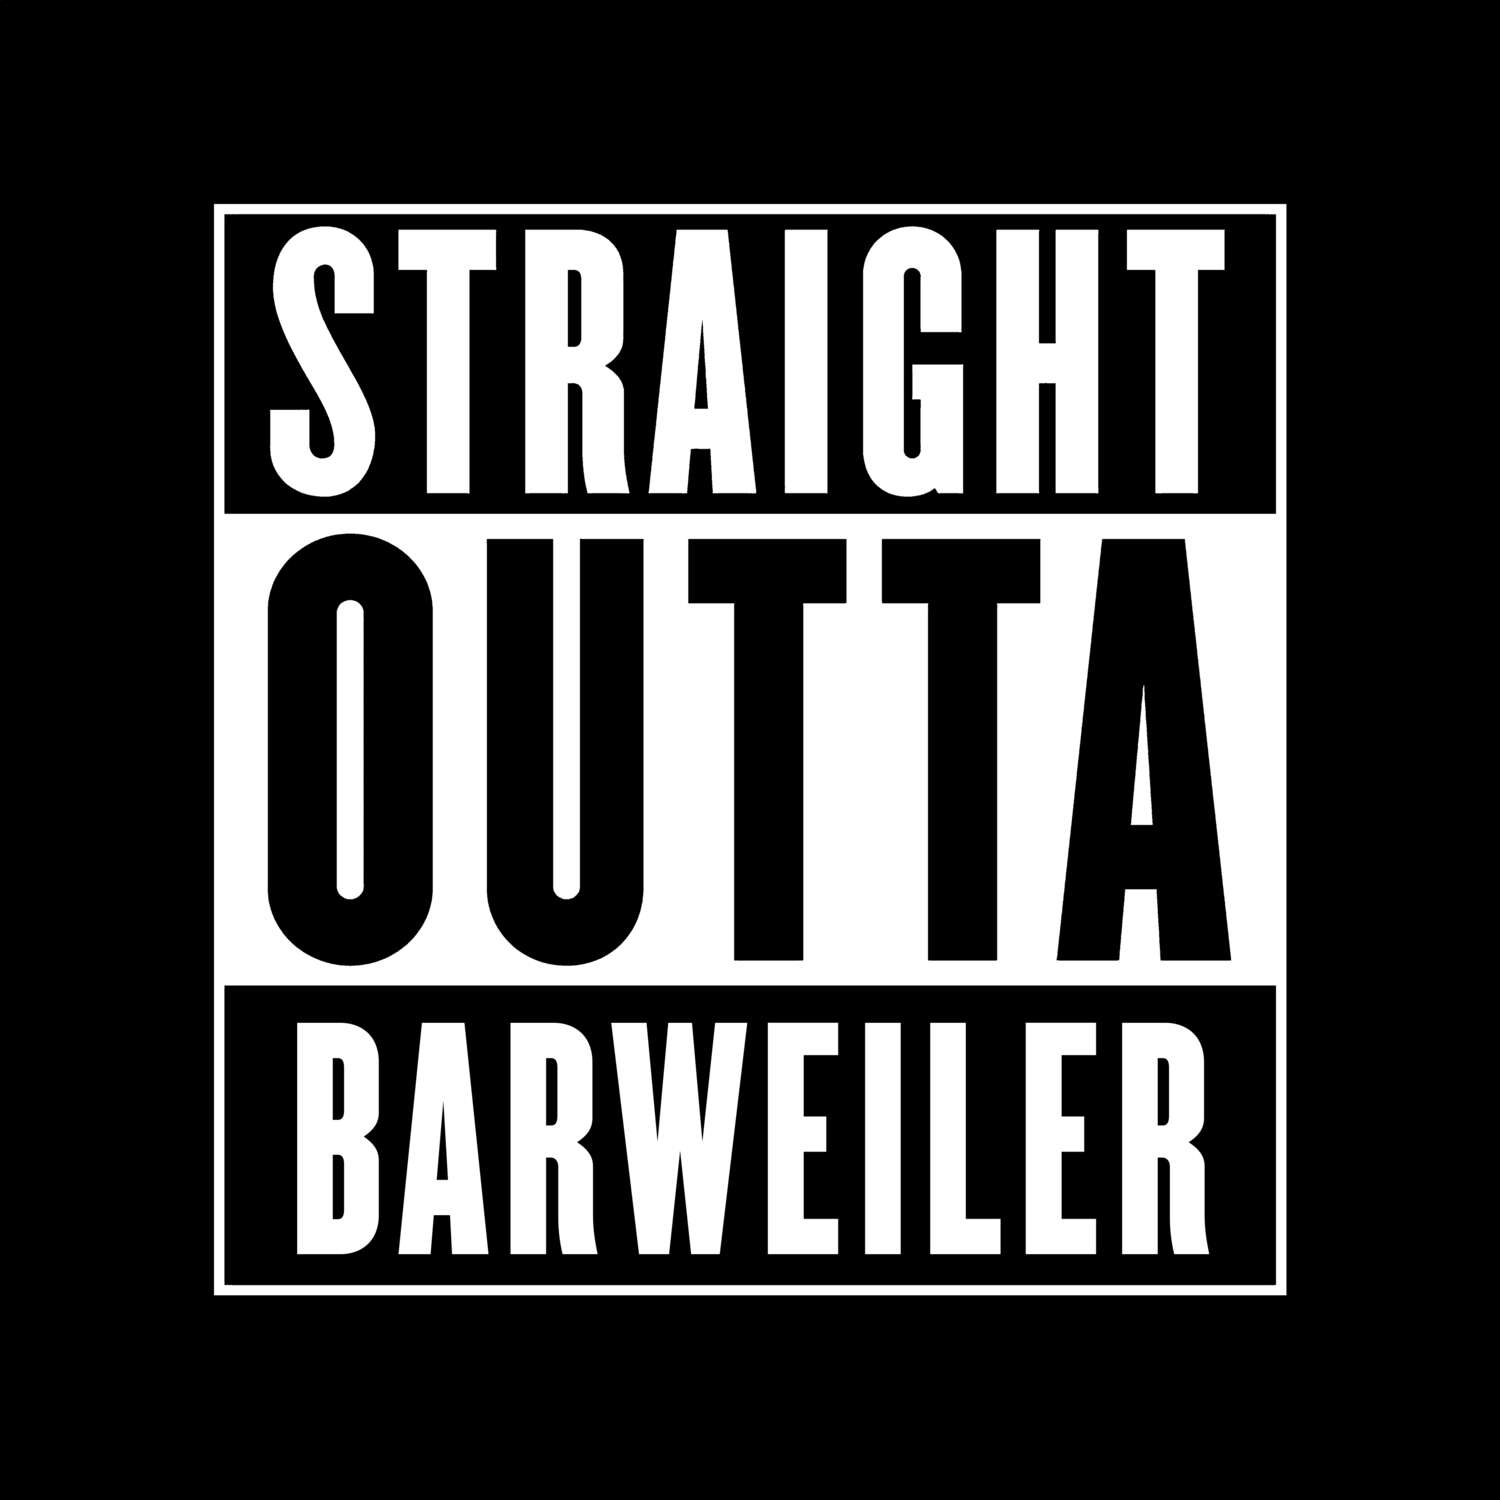 Barweiler T-Shirt »Straight Outta«